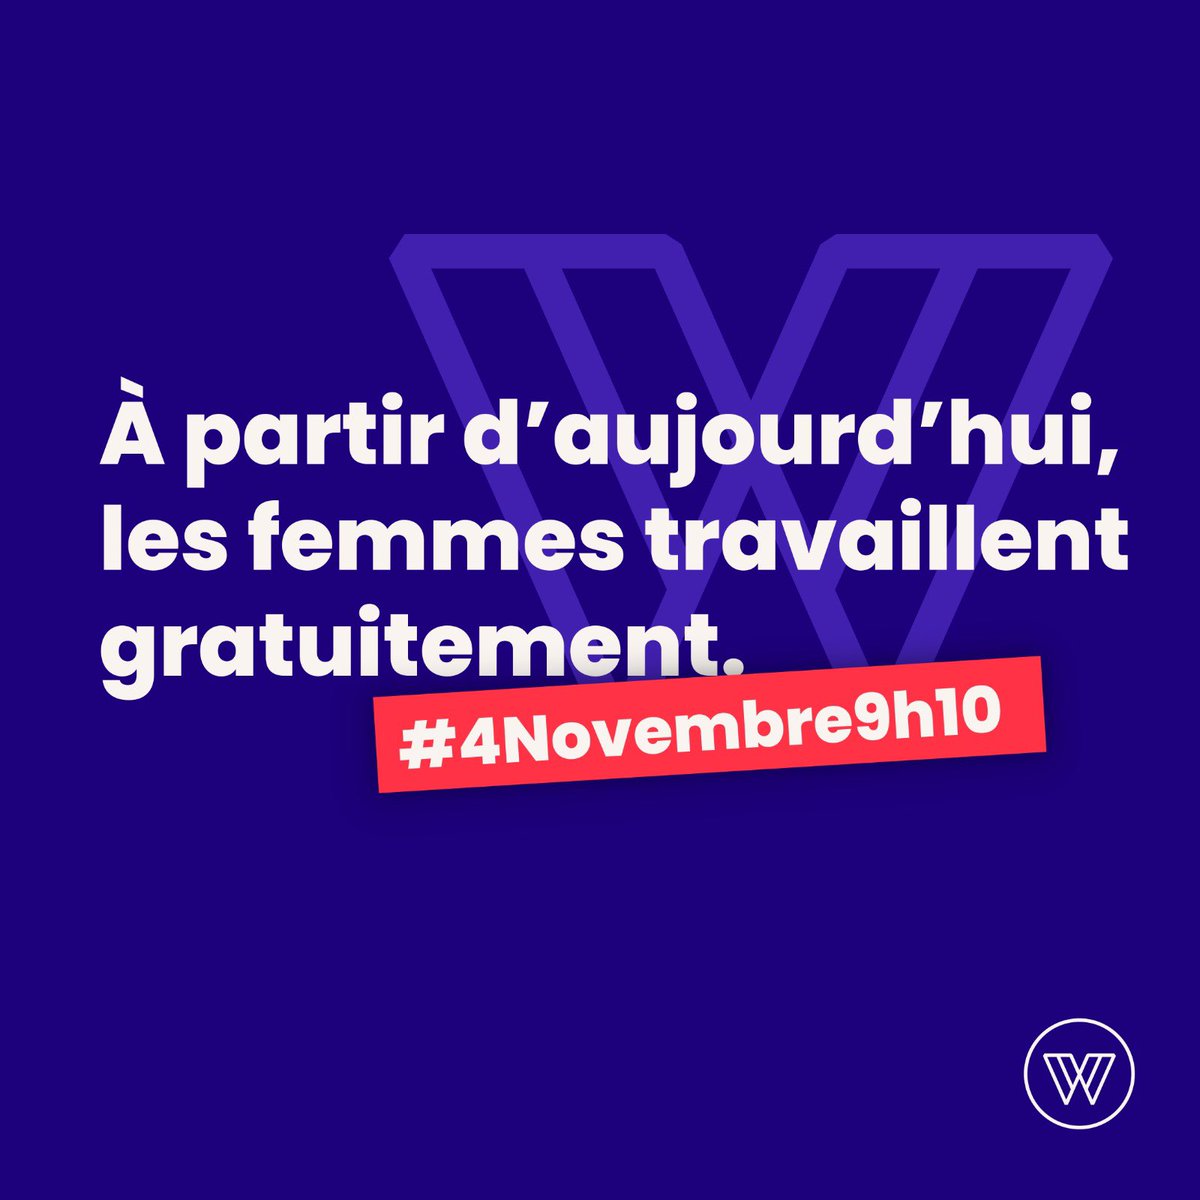 🚨 À partir de maintenant #4novembre9h10, les femmes travaillent gratuitement. Des inégalités qui impactent l'épargne, l'ambition, l'émancipation des femmes et leur capacité à entreprendre. Mobilisons nous toutes et tous pour y mettre fin ⬇️ @Willa_off @Les_Glorieuses